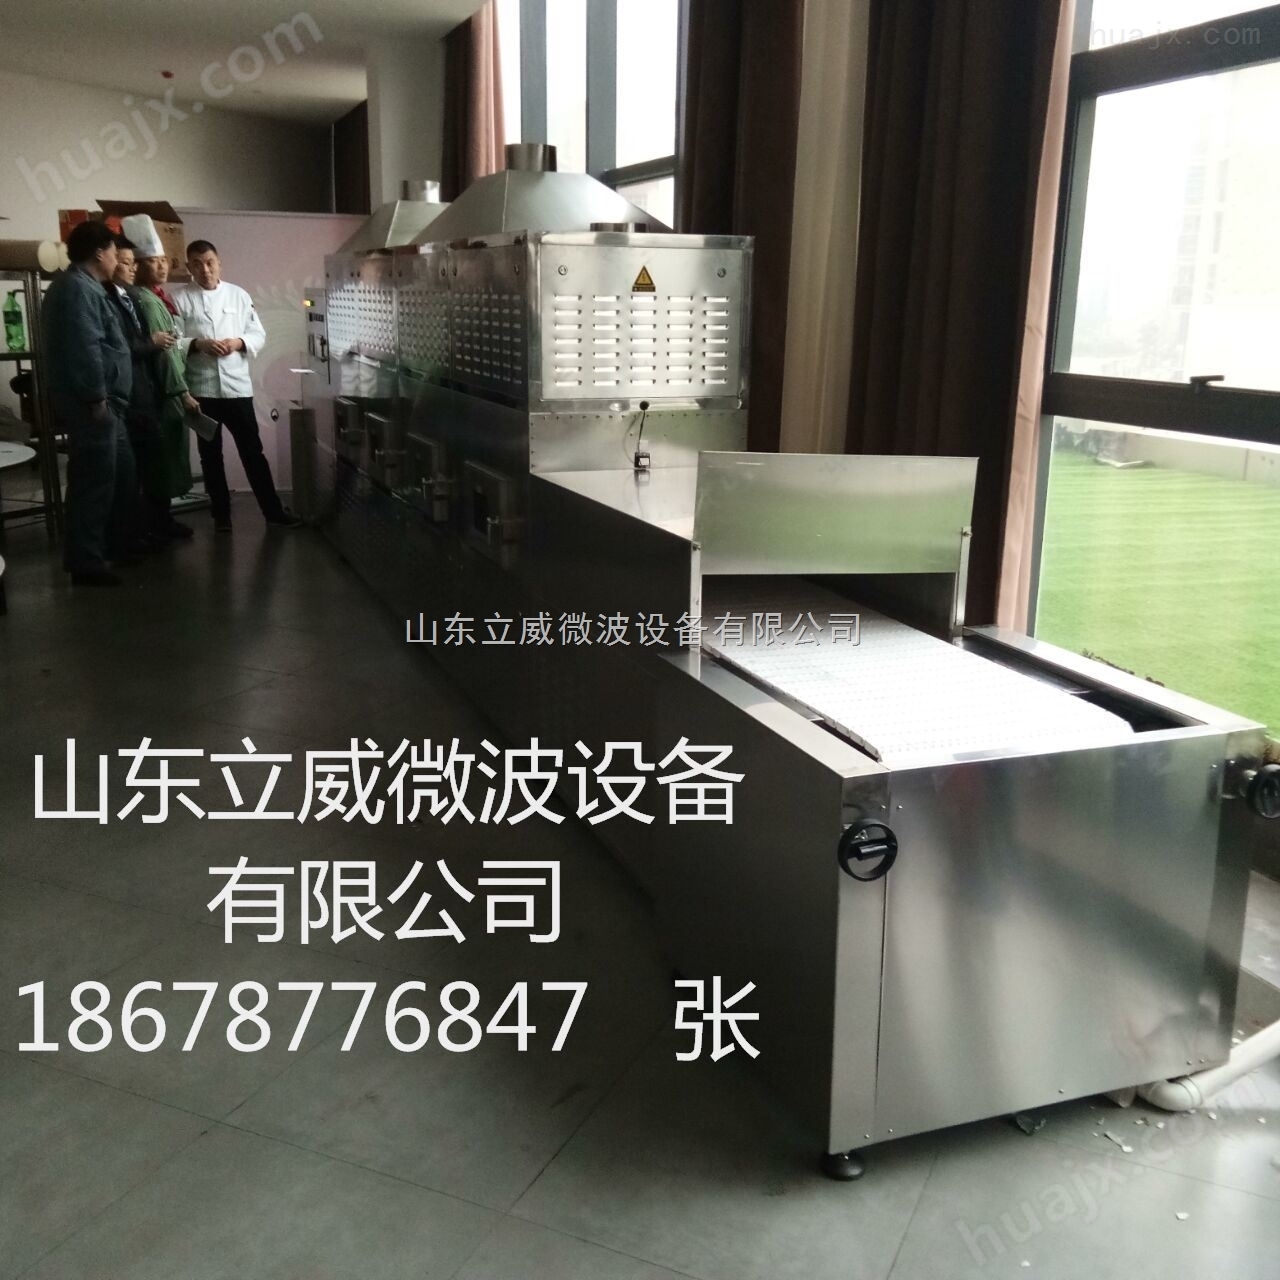 山东立威专业生产快餐盒饭微波加热设备